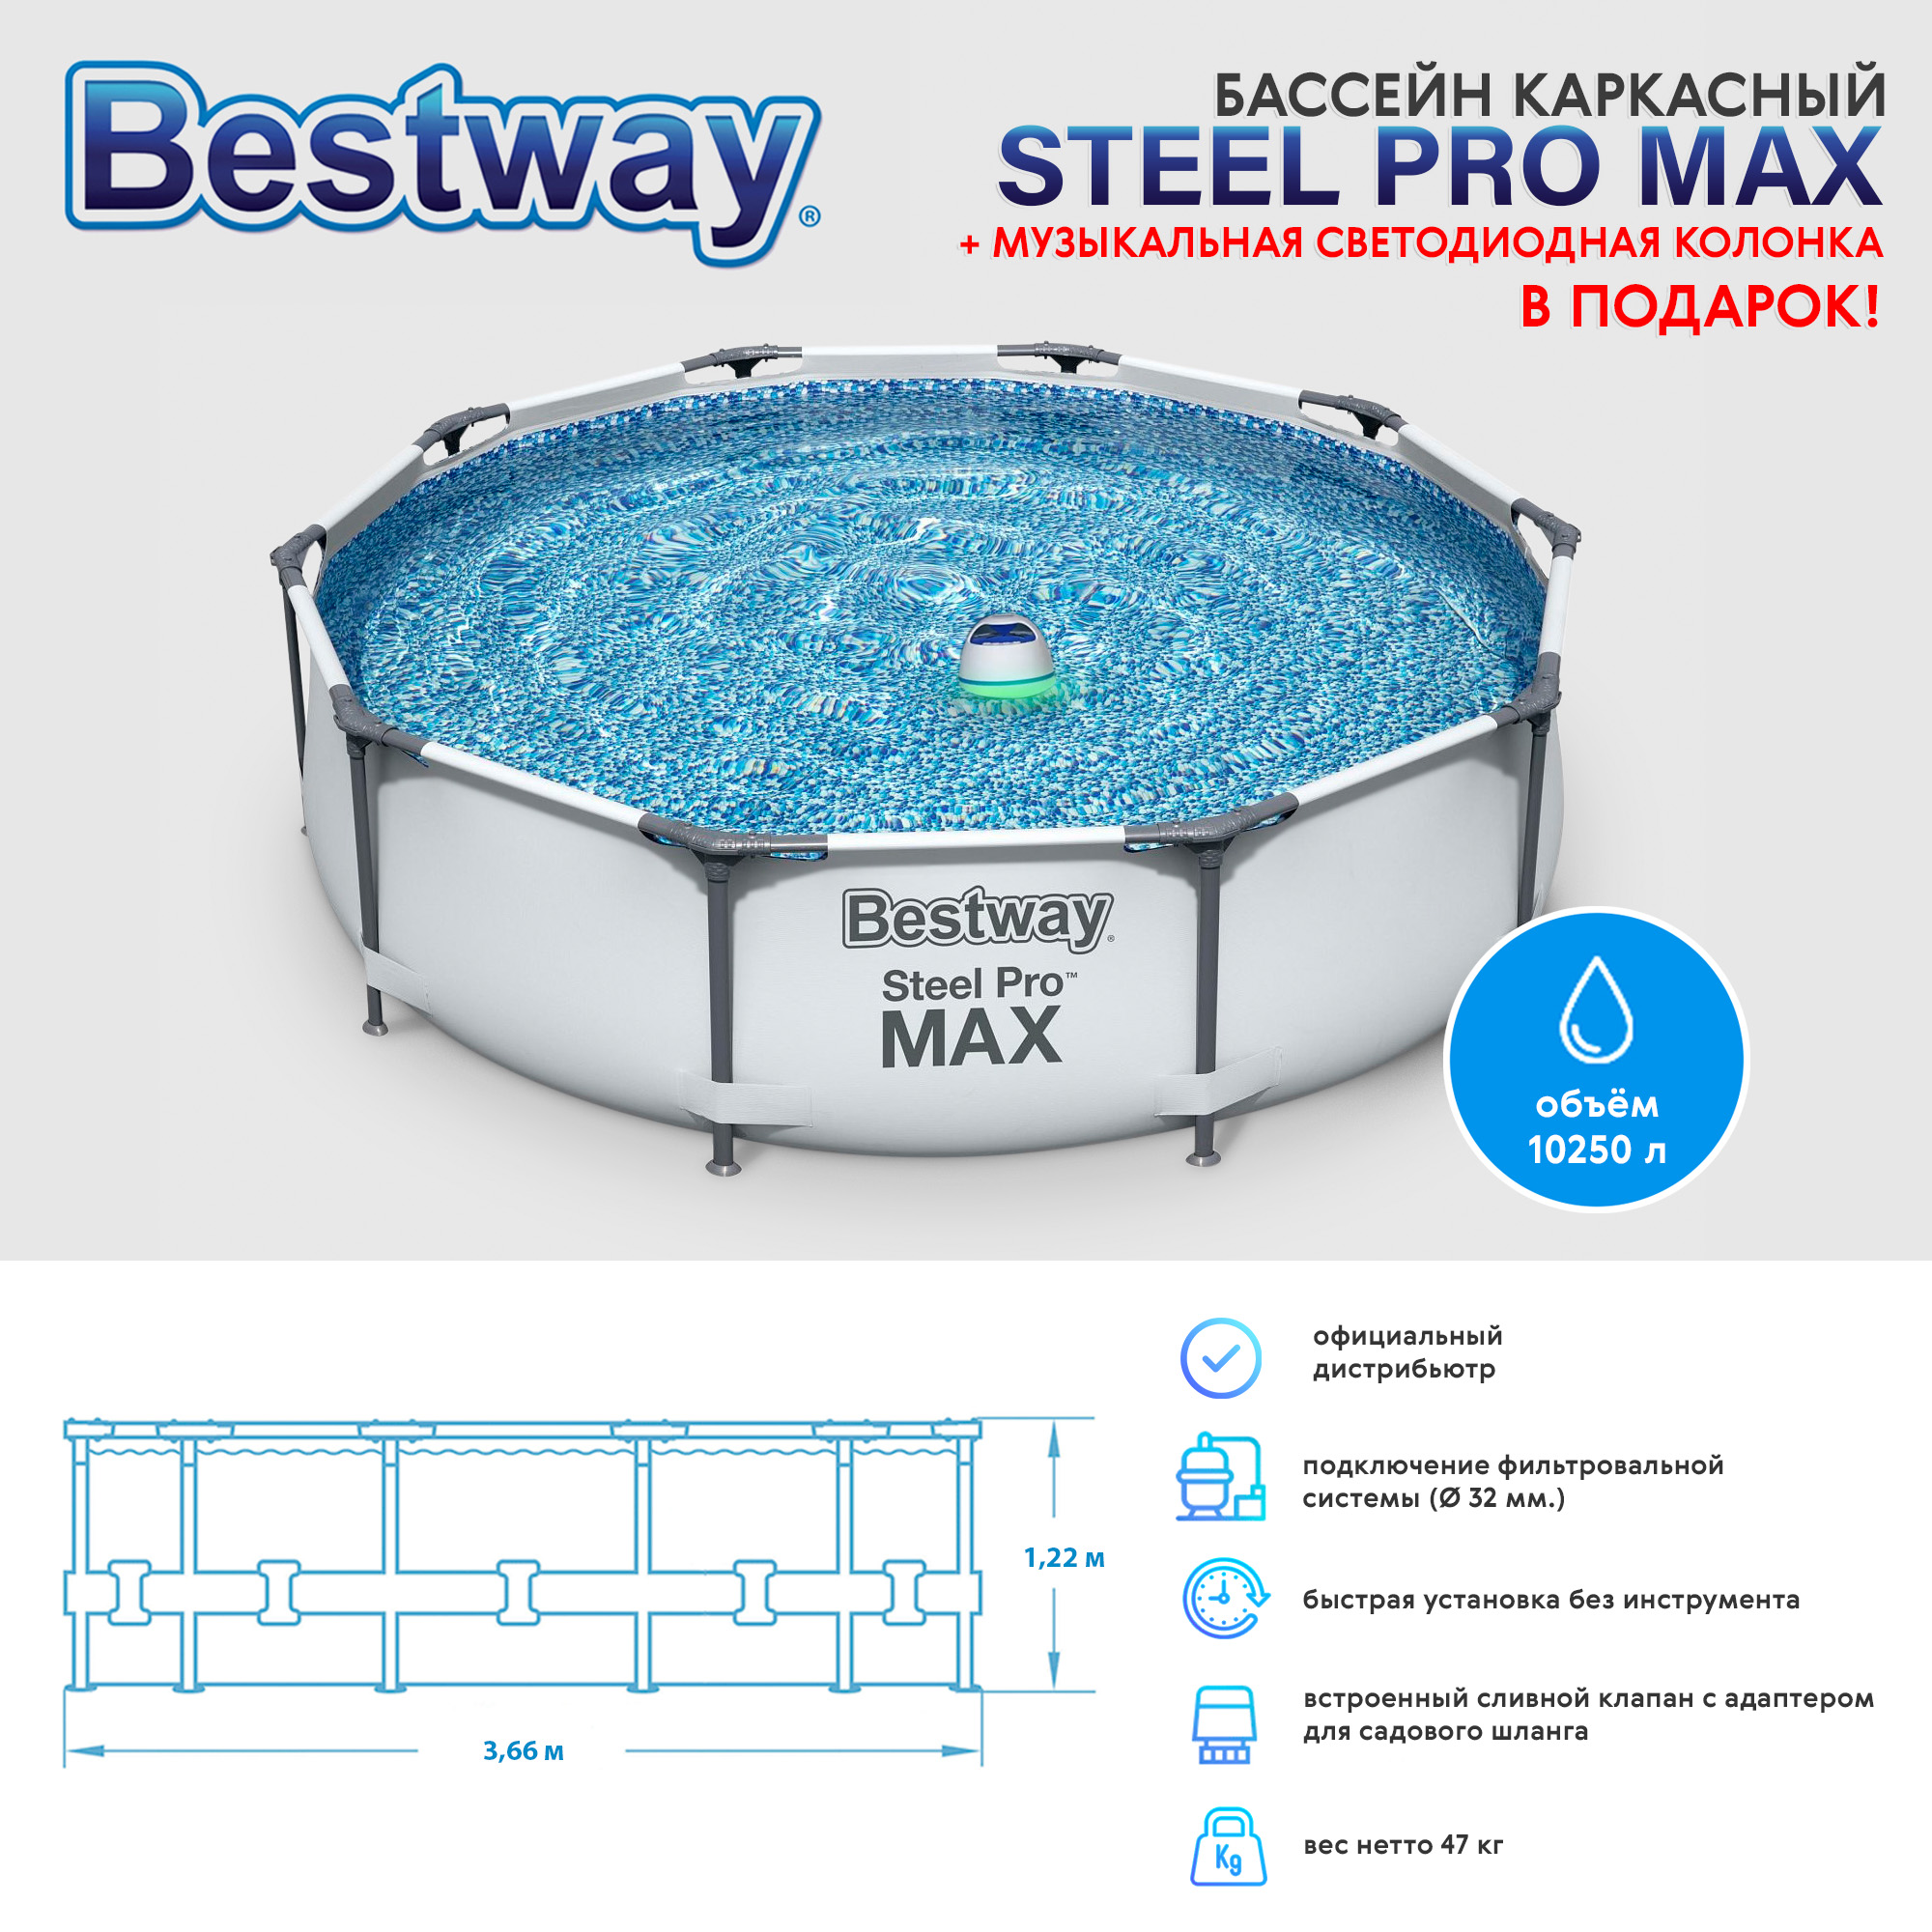 Комплект Bestway каркасный бассейн и музыкальная светодиодная колонка, цвет белый - фото 2